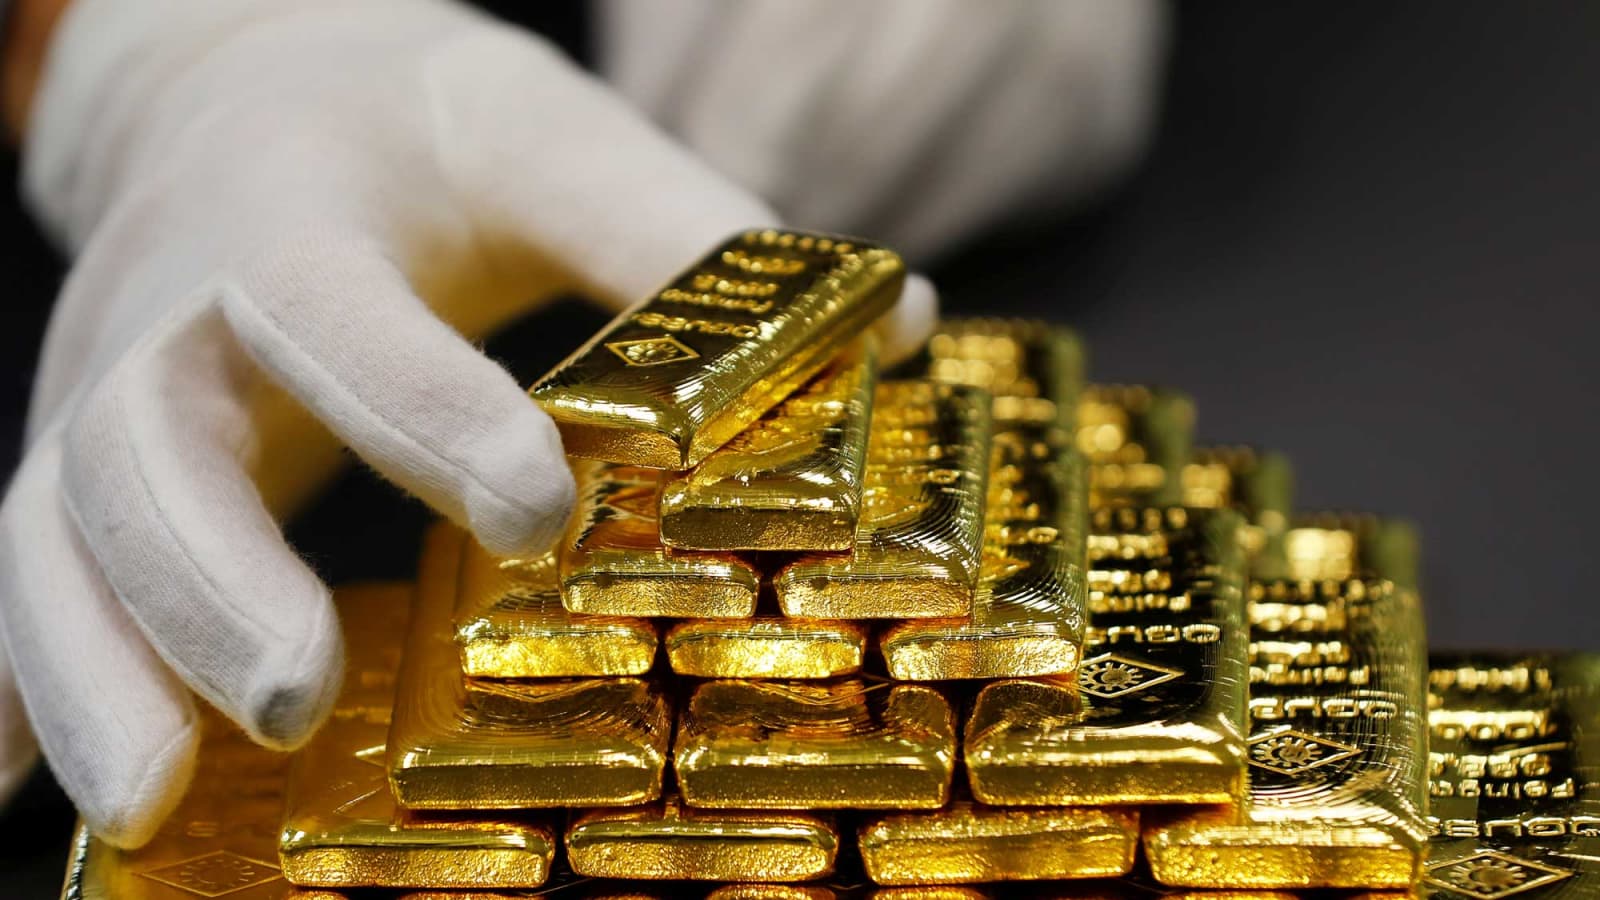 قیمت طلا امروز چند است؟ (چهارشنبه 10 شهریور 1400)